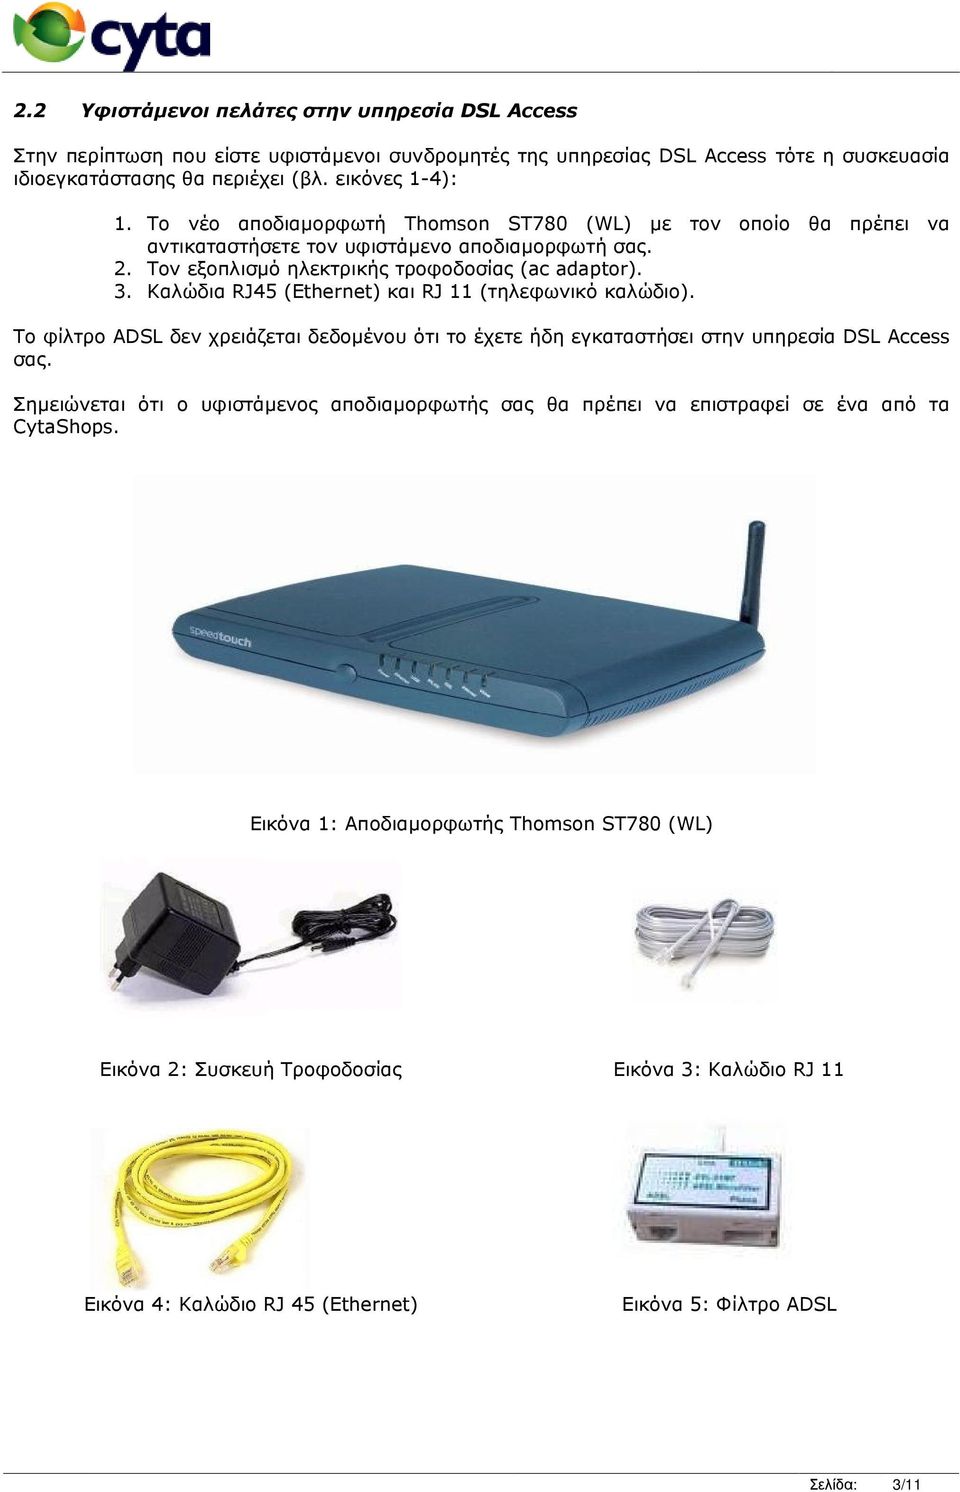 Καλώδια RJ45 (Ethernet) και RJ 11 (τηλεφωνικό καλώδιο). Το φίλτρο ADSL δεν χρειάζεται δεδοµένου ότι το έχετε ήδη εγκαταστήσει στην υπηρεσία DSL Access σας.